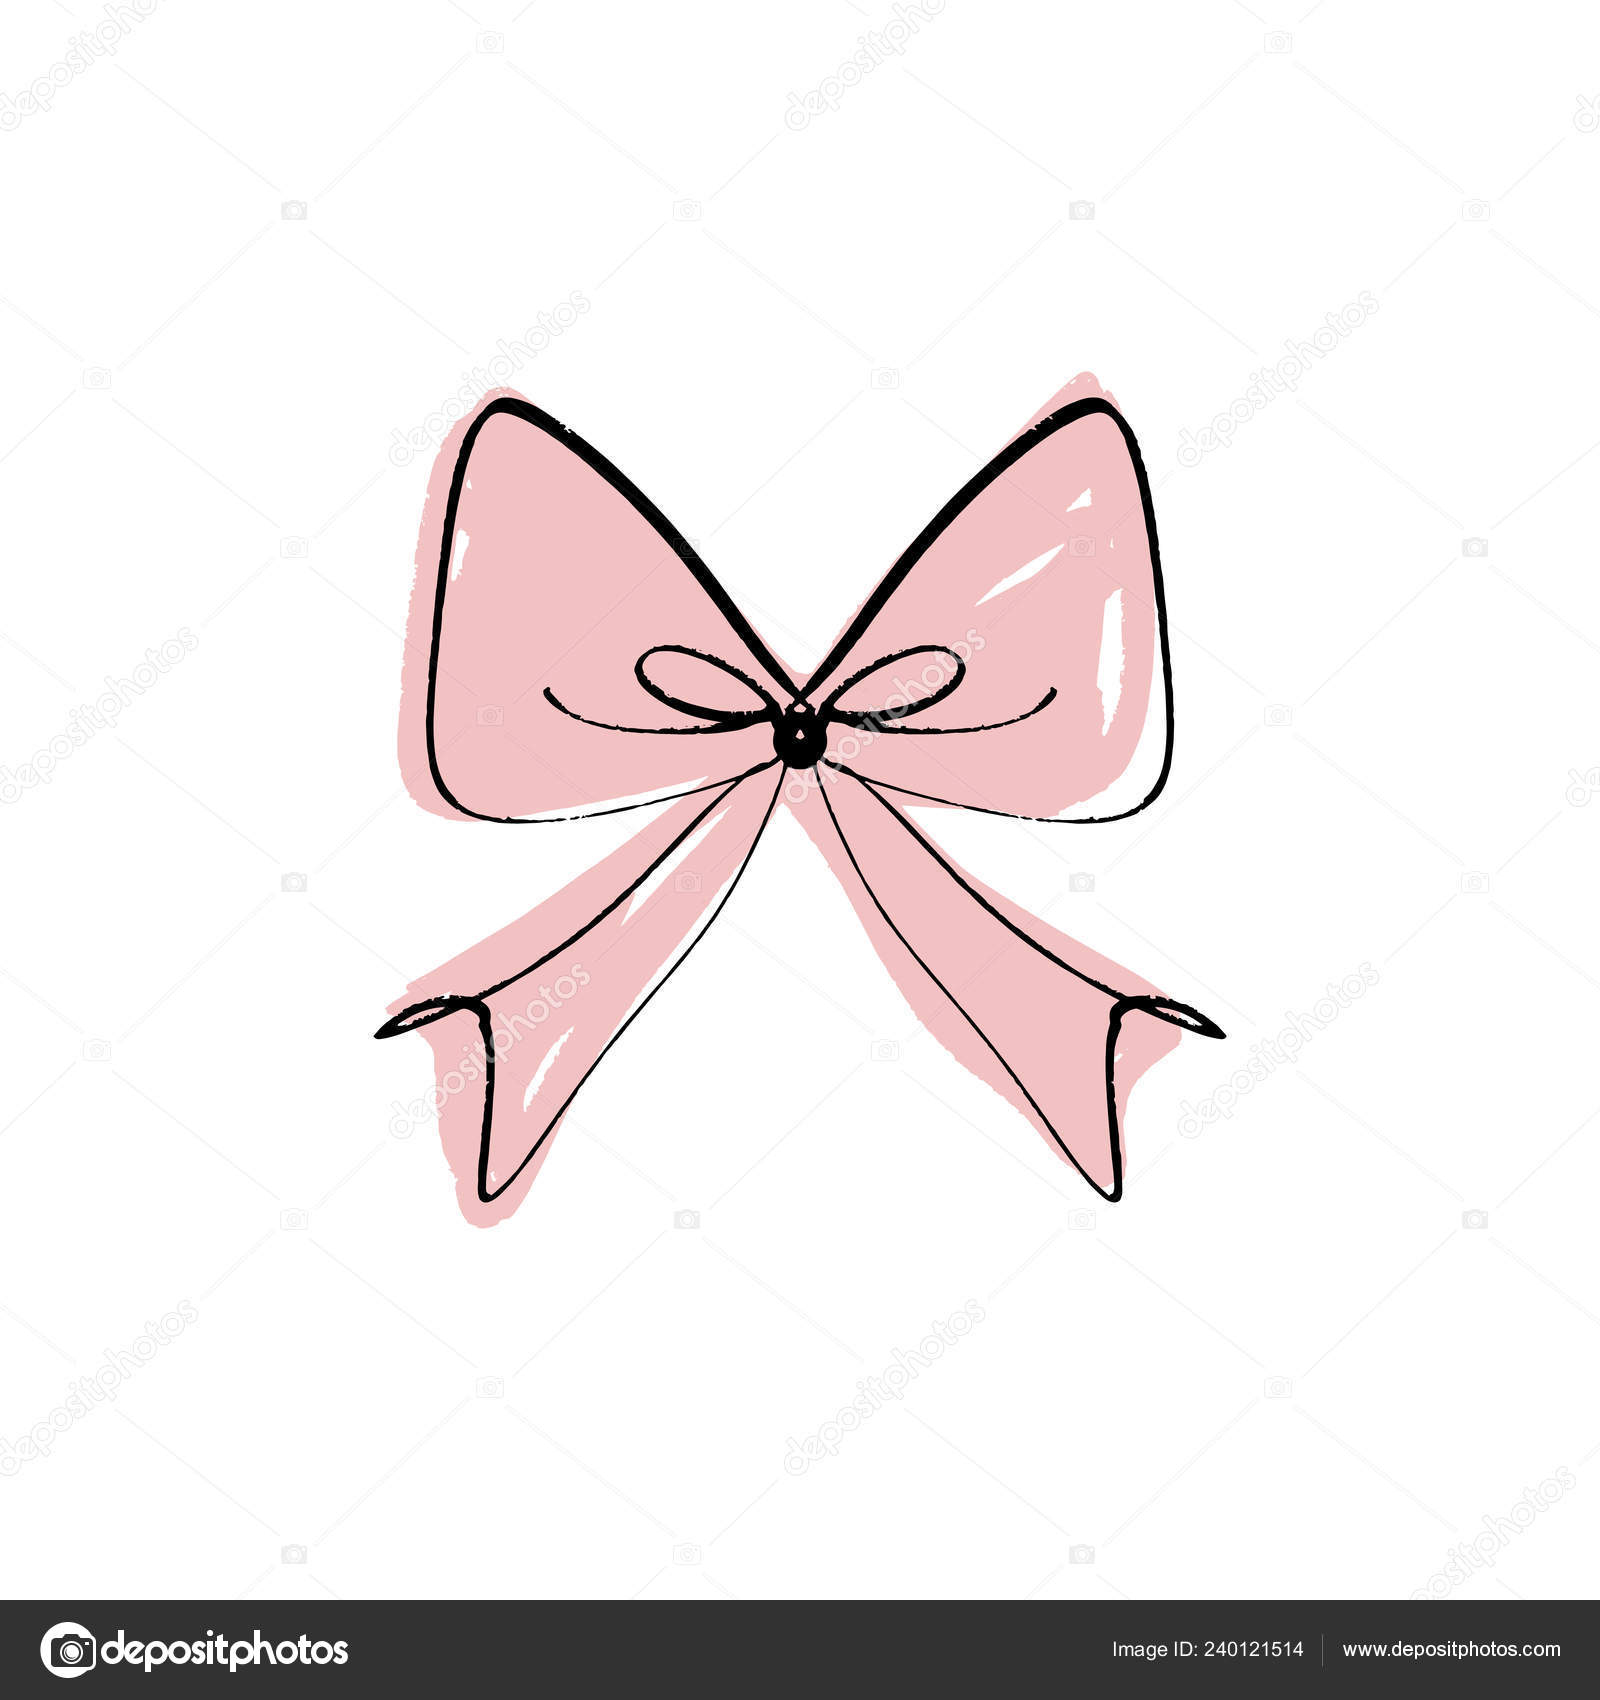 Pink Bow Ribbon Hand Drawing, Stock vector